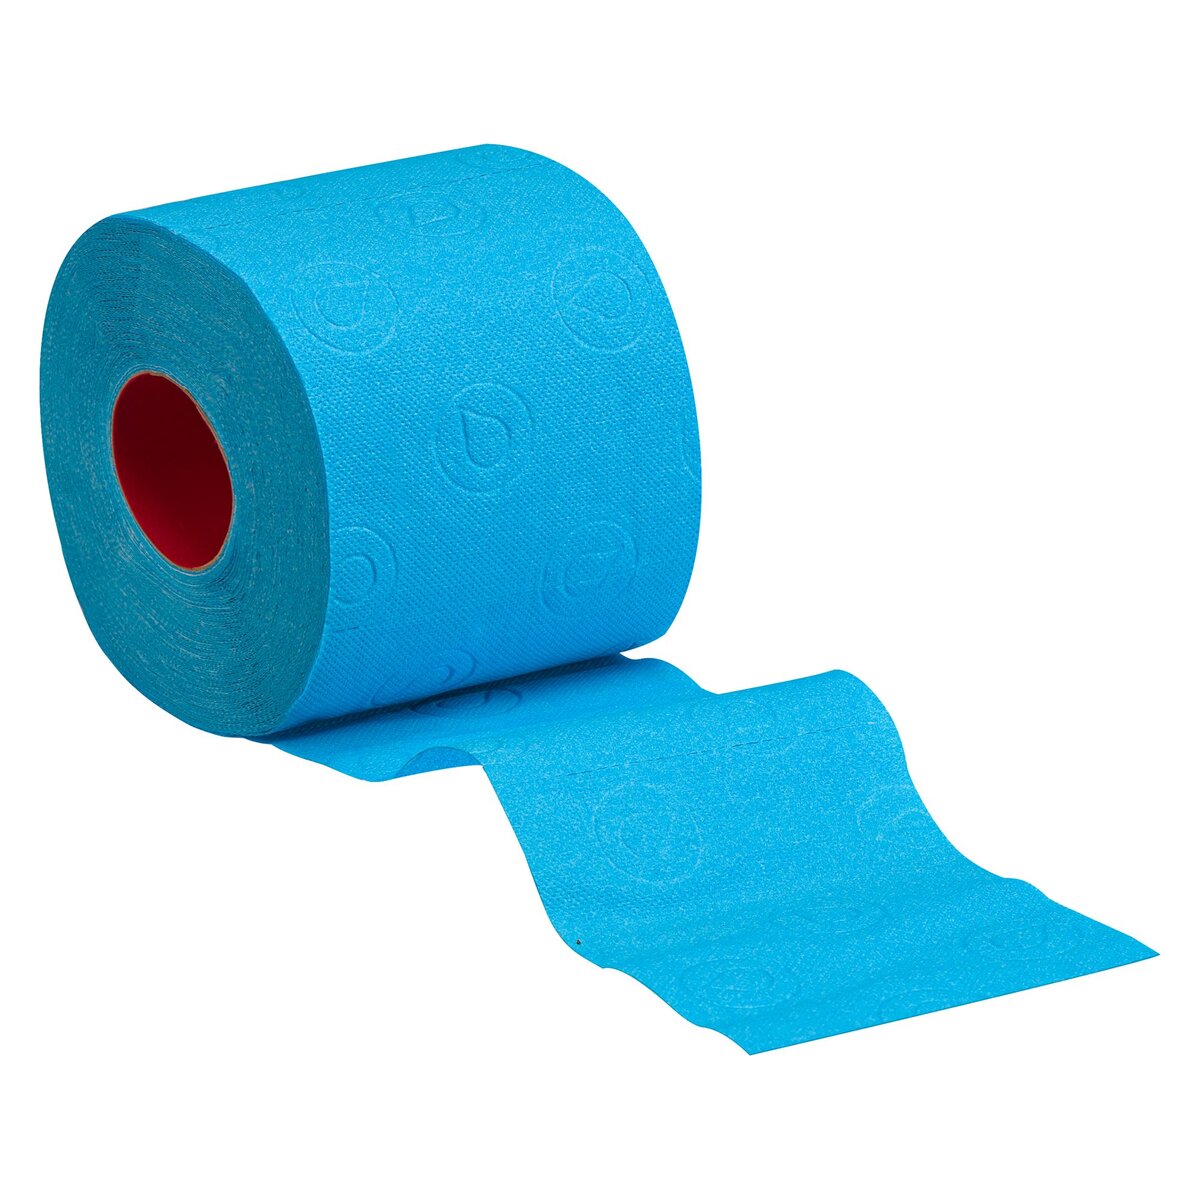 CASINO Papier toilette 3 plis blanc/bleu - x4